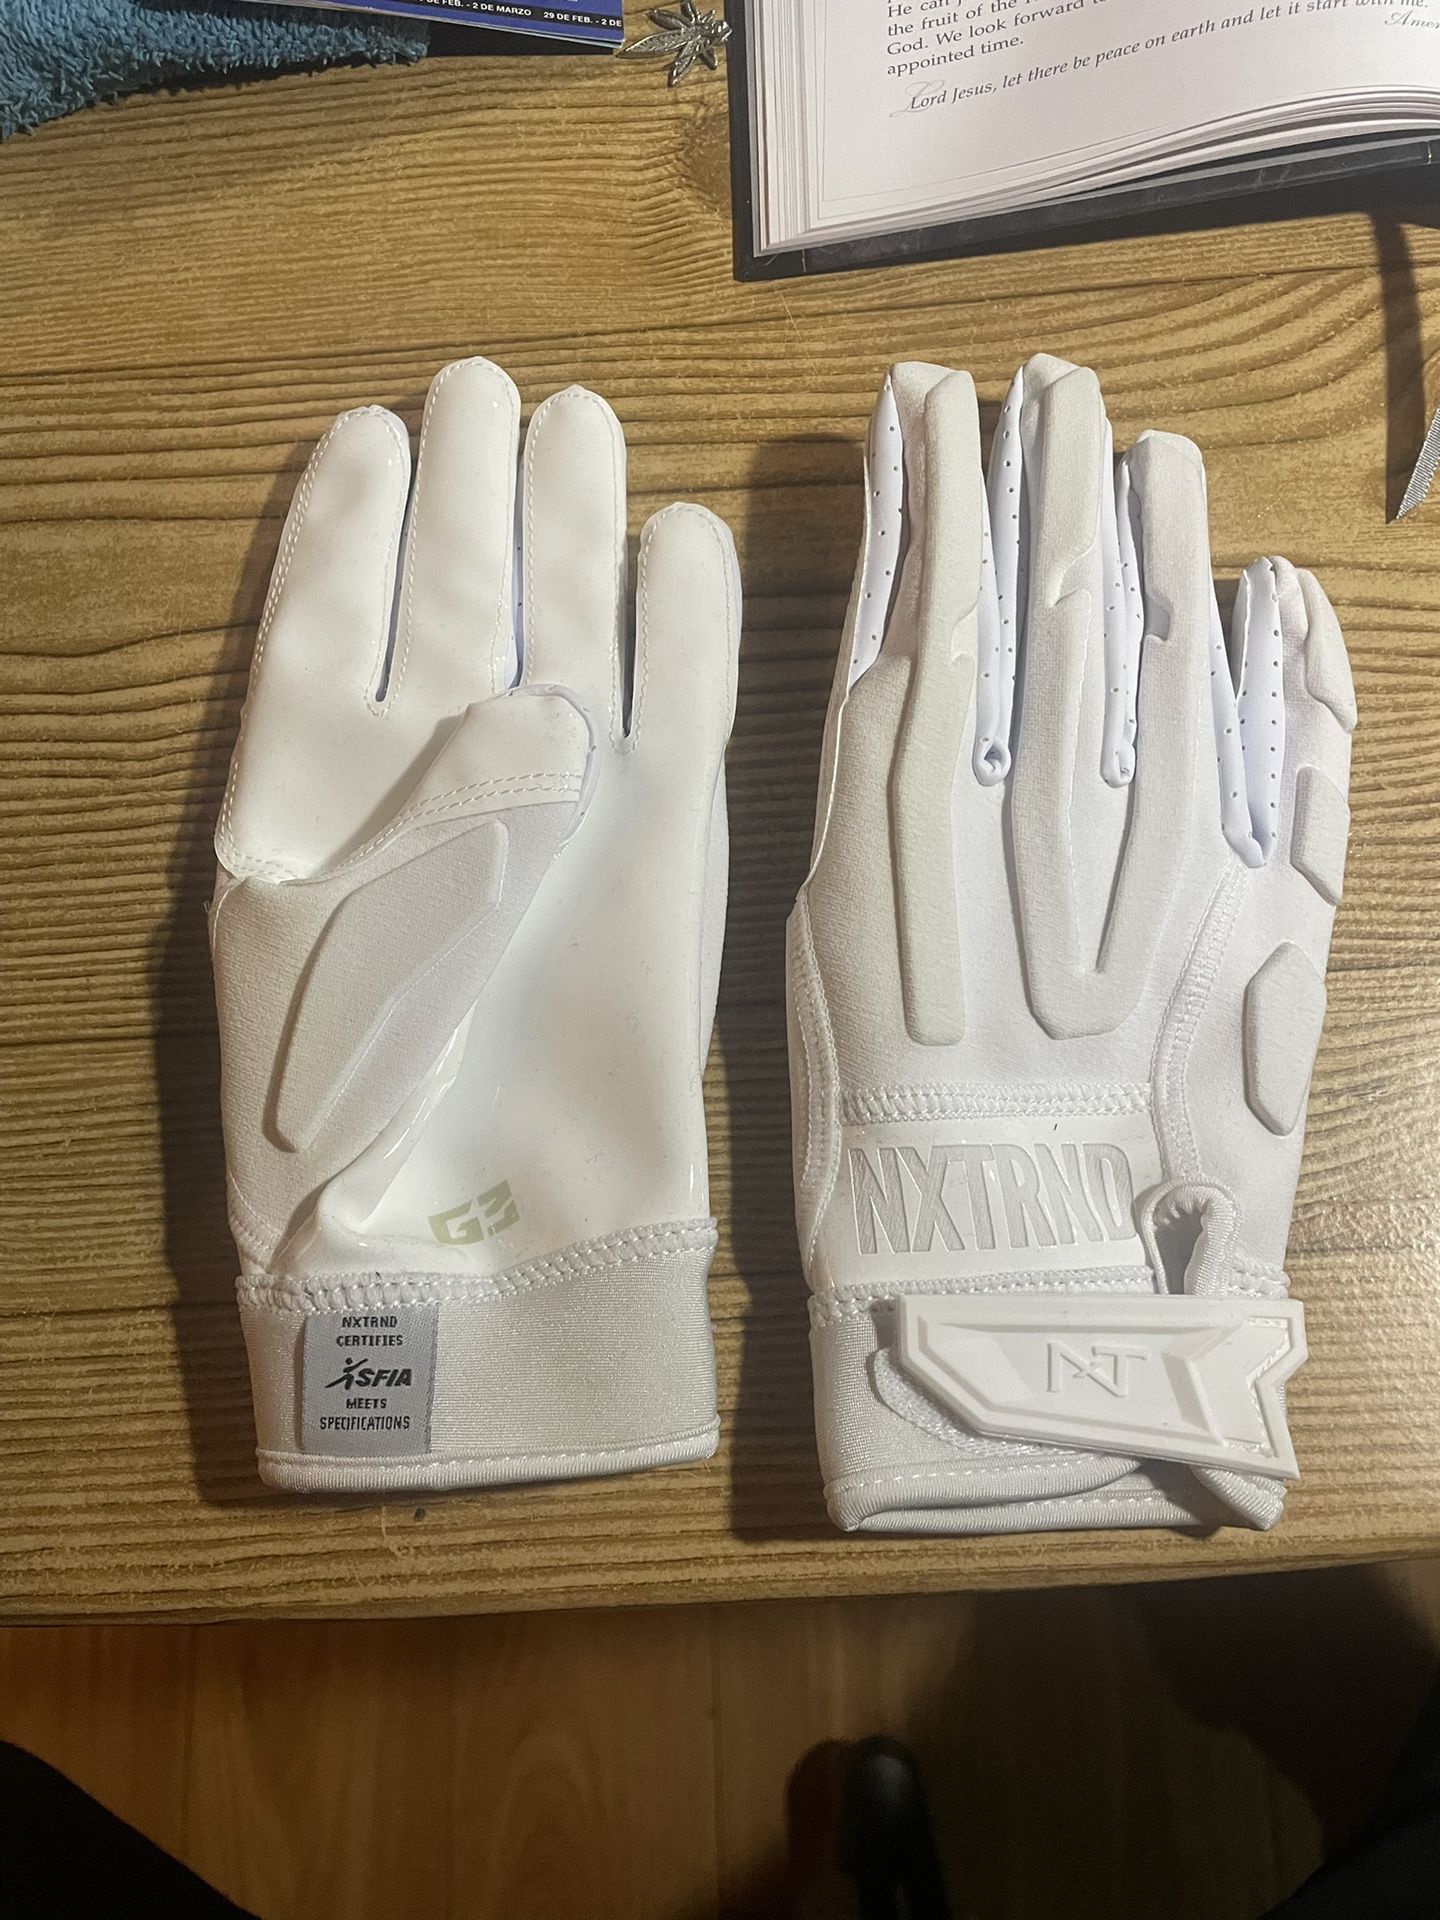 NXTRND G3 Padded Gloves 